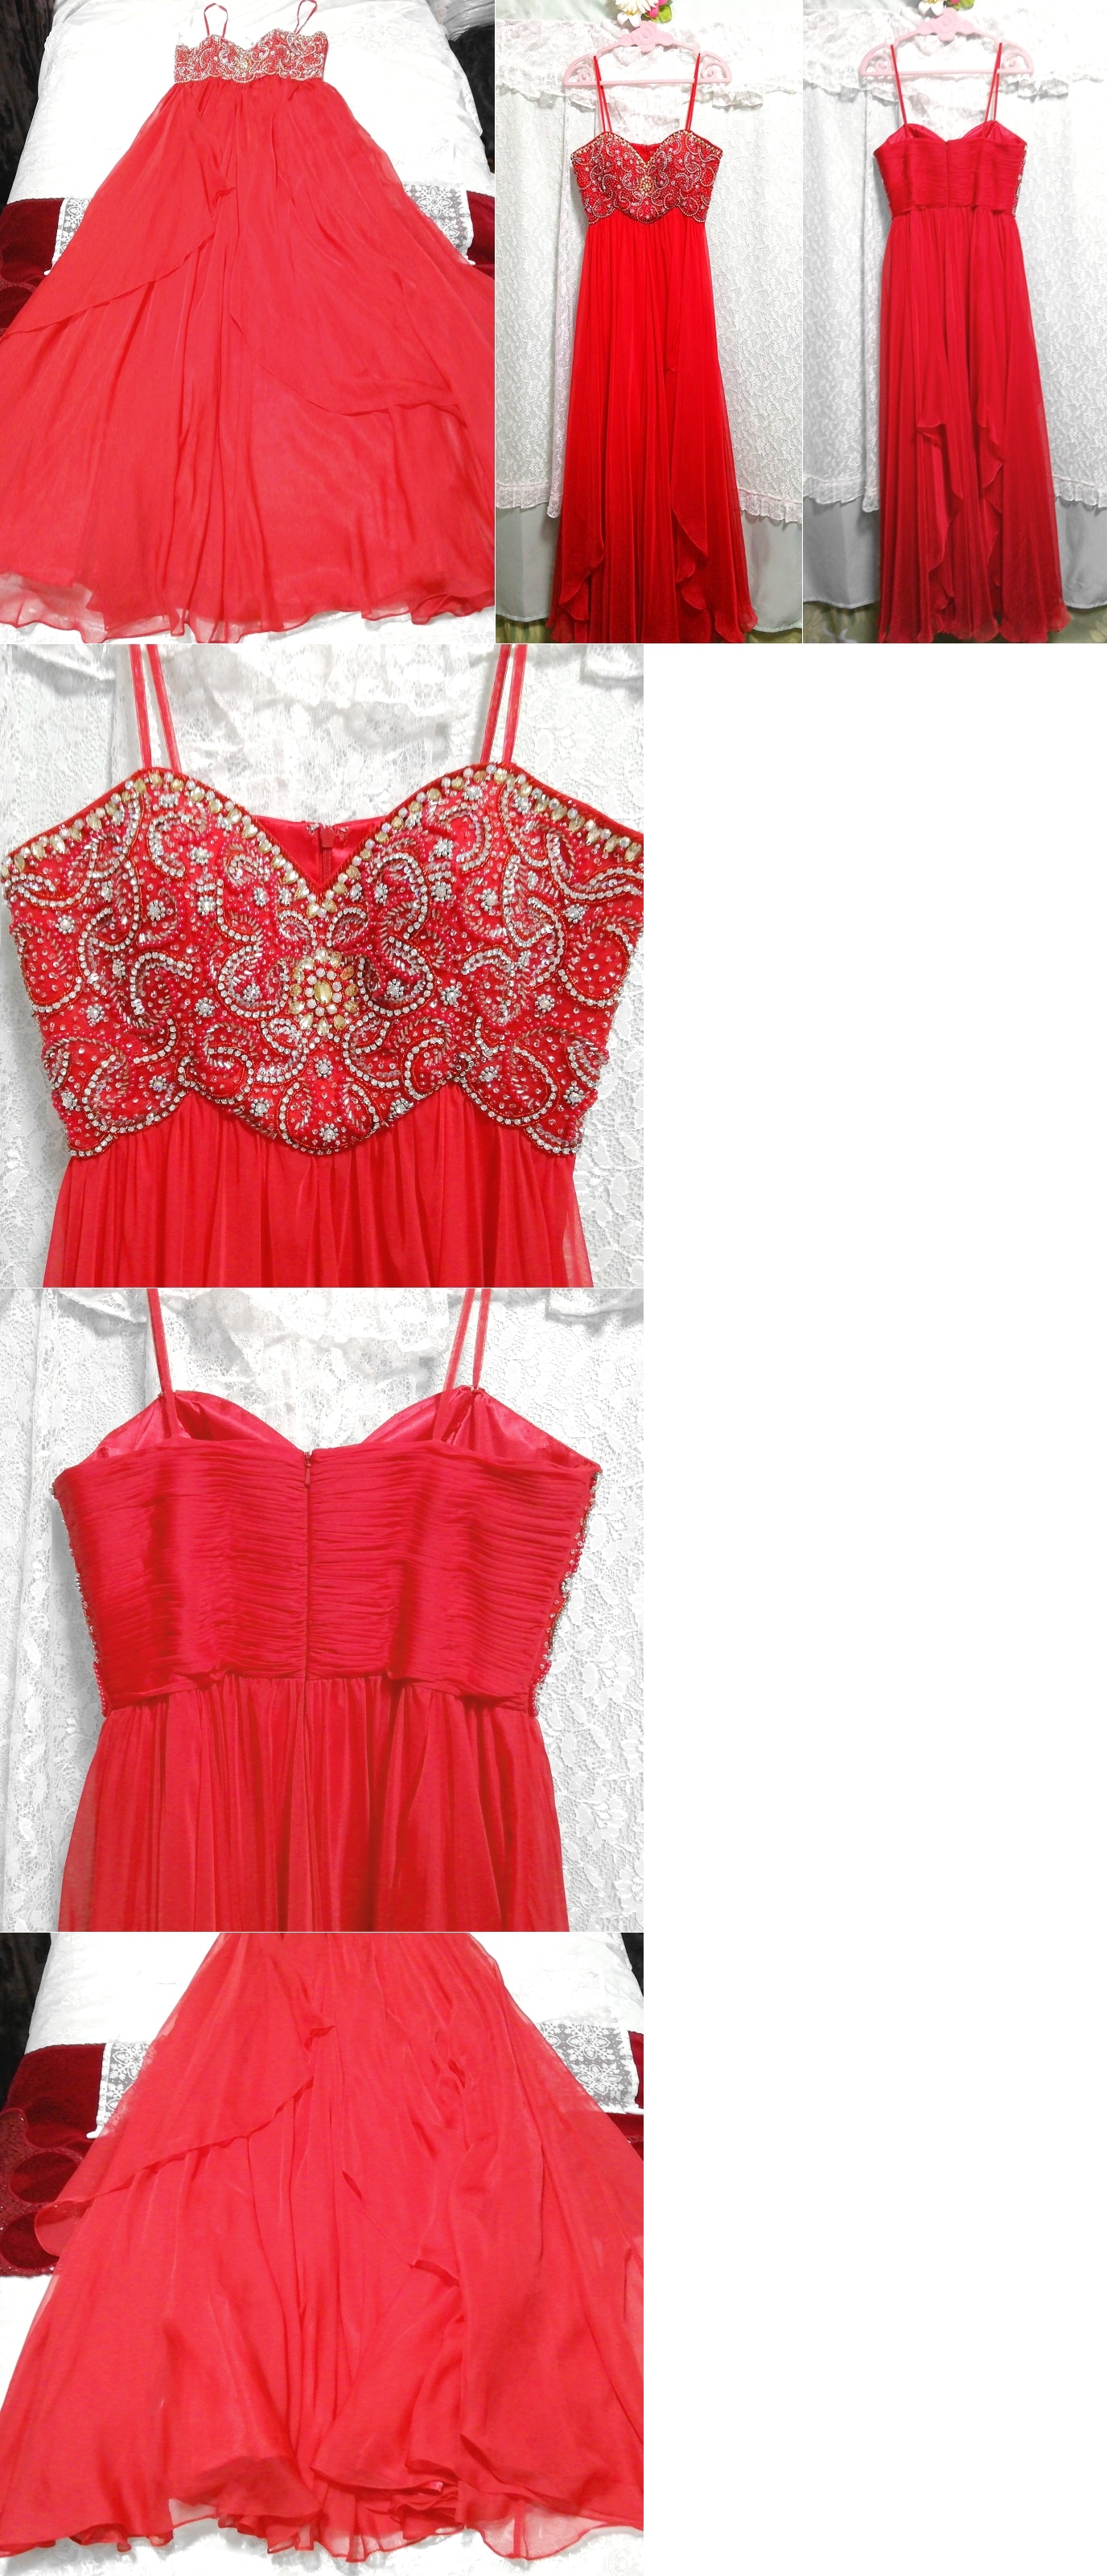 真紅赤豪華シフォンネグリジェキャミソールマキシワンピースドレス Crimson red luxurious chiffon negligee camisole maxi dress, ワンピース, ロングスカート, Mサイズ